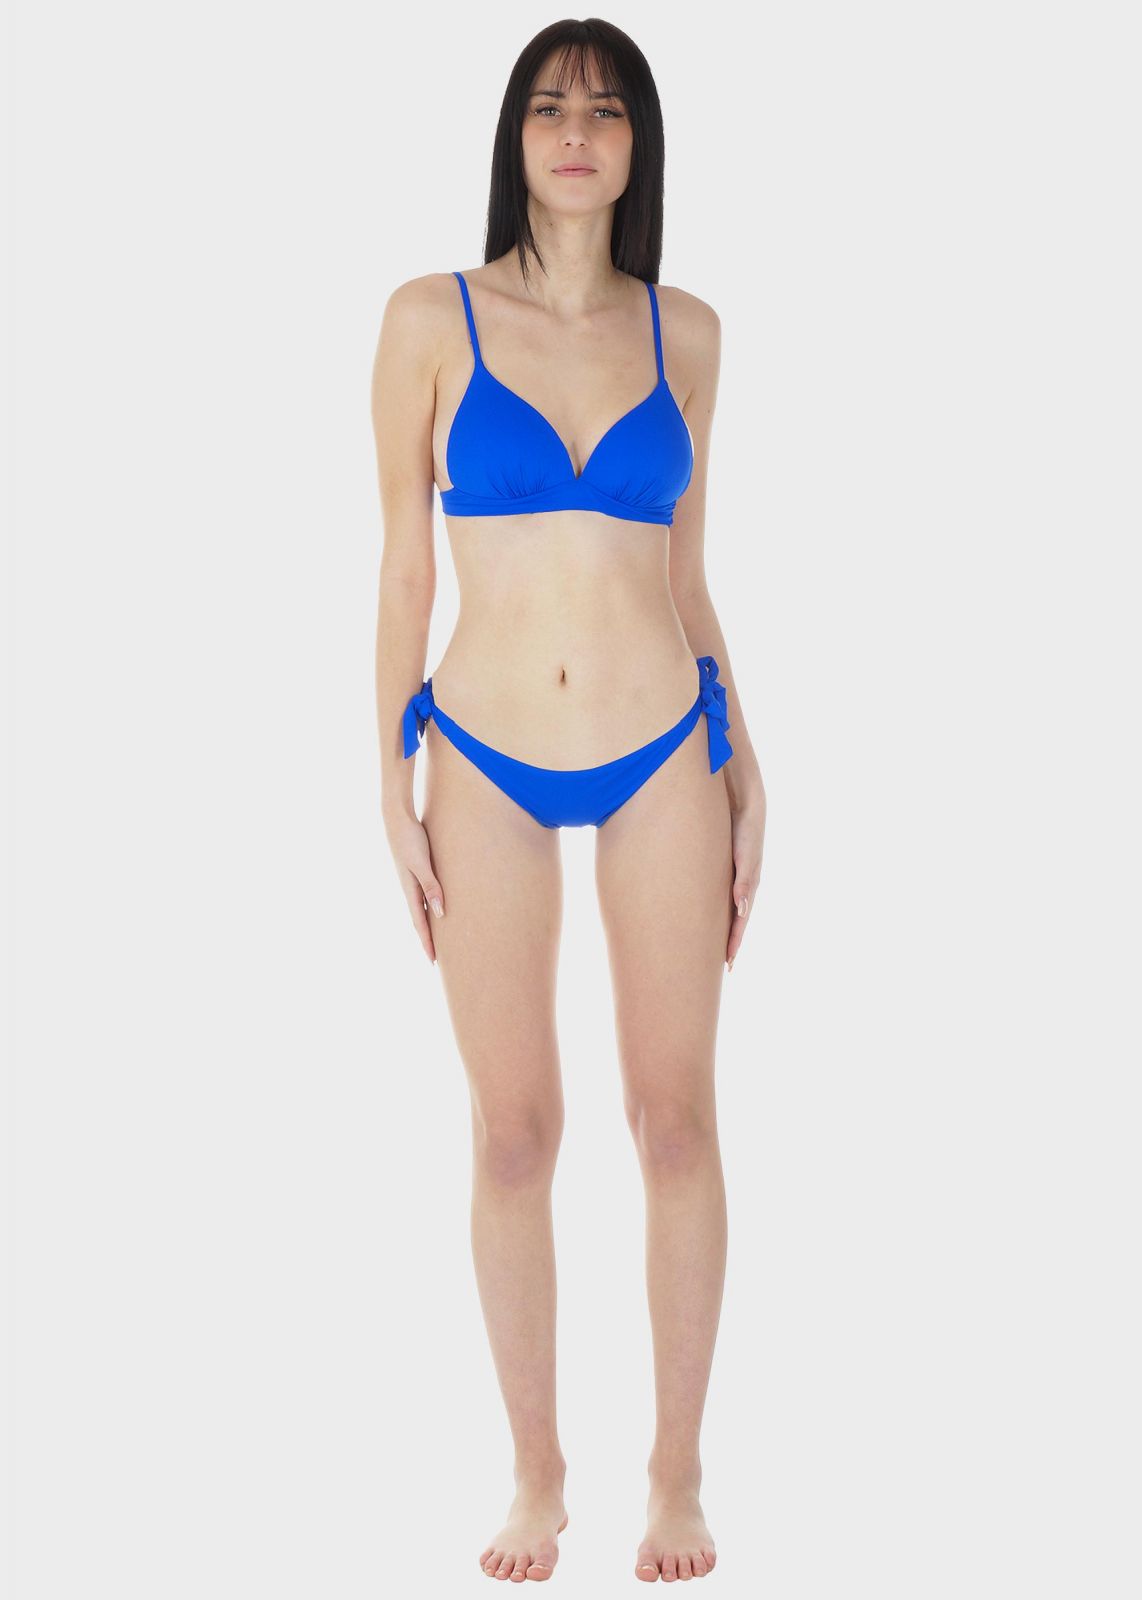 Γυναικείο σετ μαγιό bikini μονόχρωμο ενσωματωμένη ενίσχυση push up slip δετό κανονική γραμμή.Καλύπτει B CUP ΡΟΥΑ